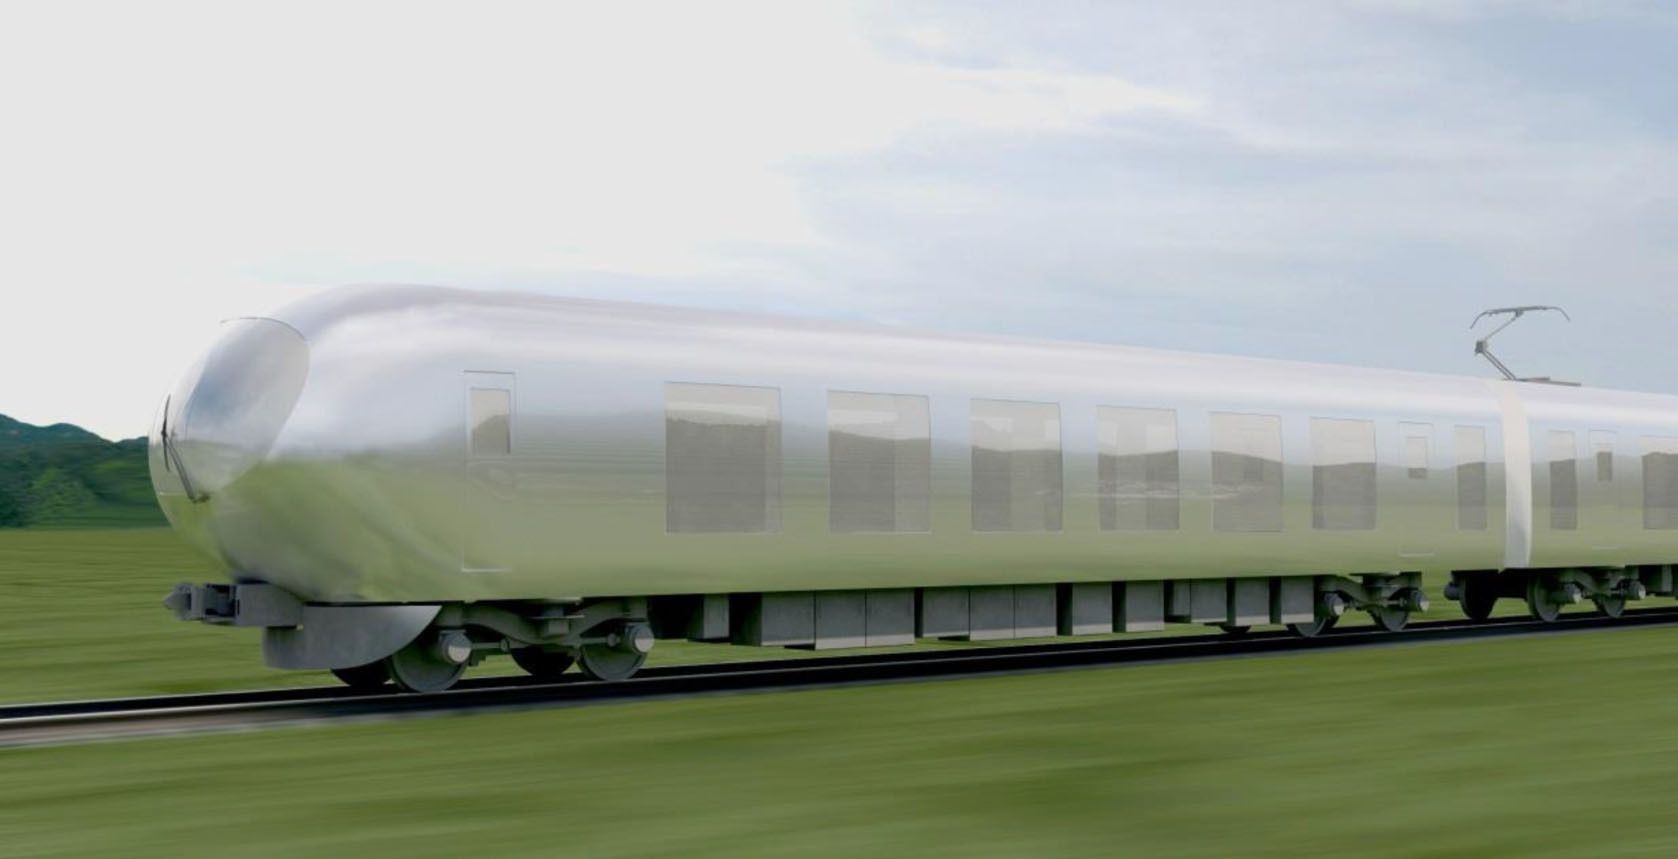 Le Japon aura bientôt des trains invisibles